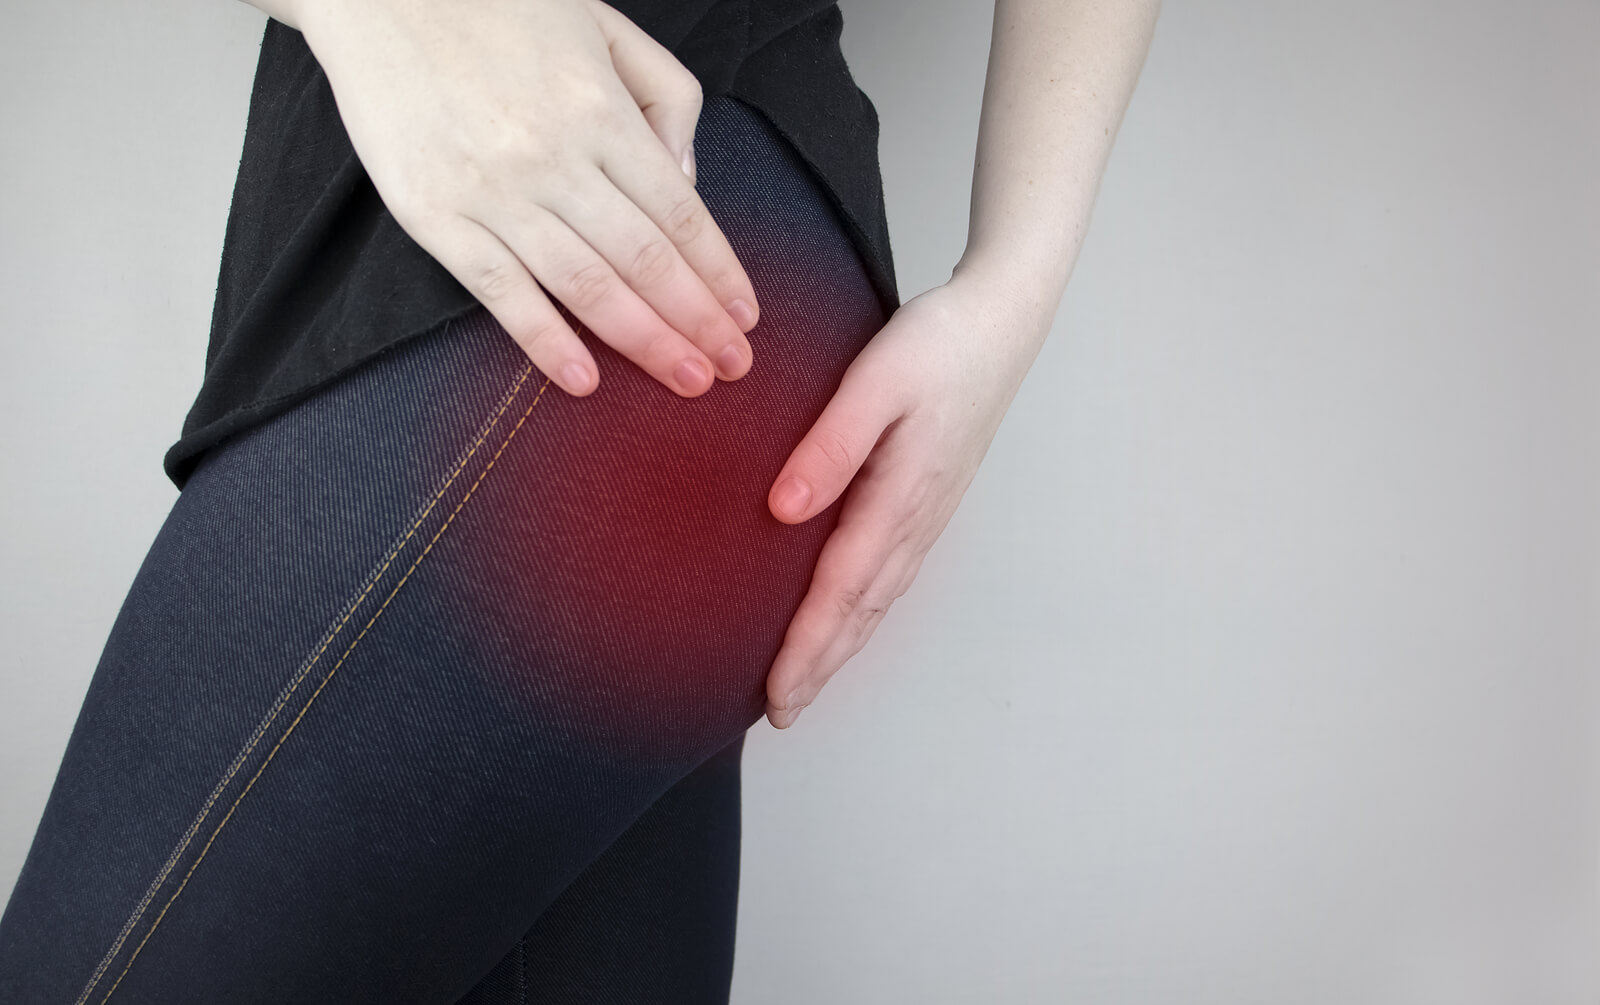 Entre as diferenças entre dor nos rins e lombalgia estão as características da dor e os sintomas associados